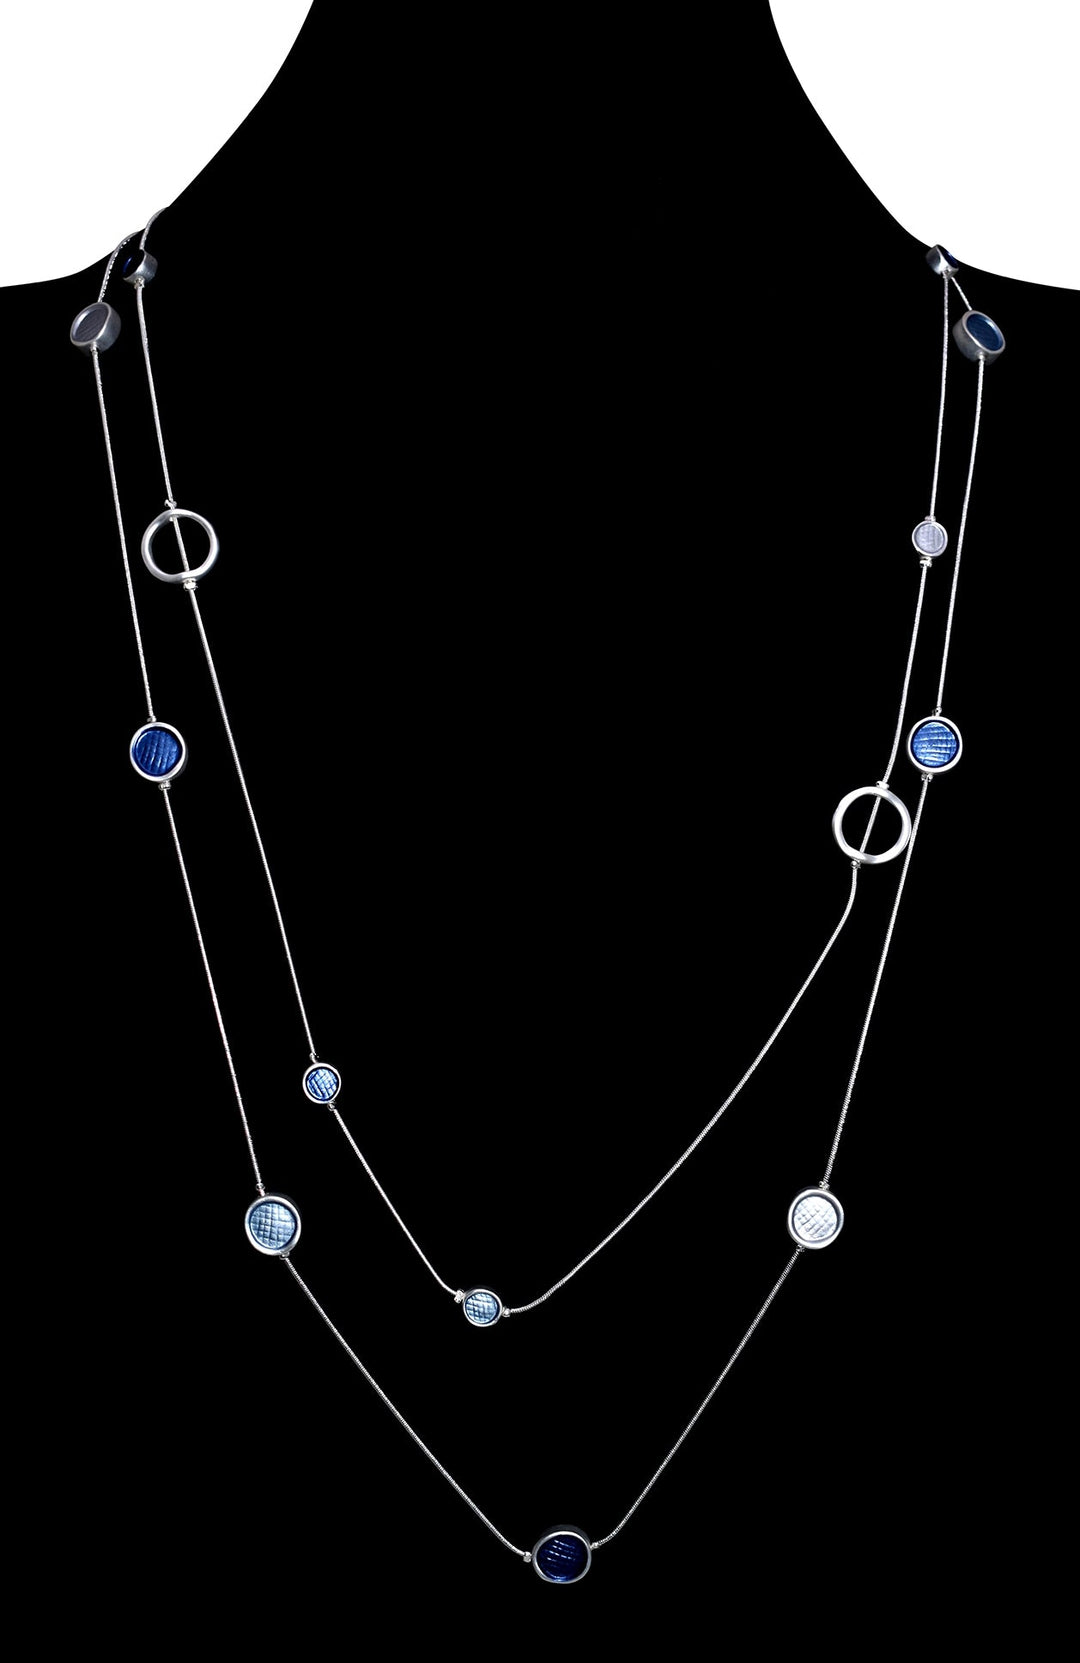 Collier long deux rangs avec insertion de formes circulaires bleu